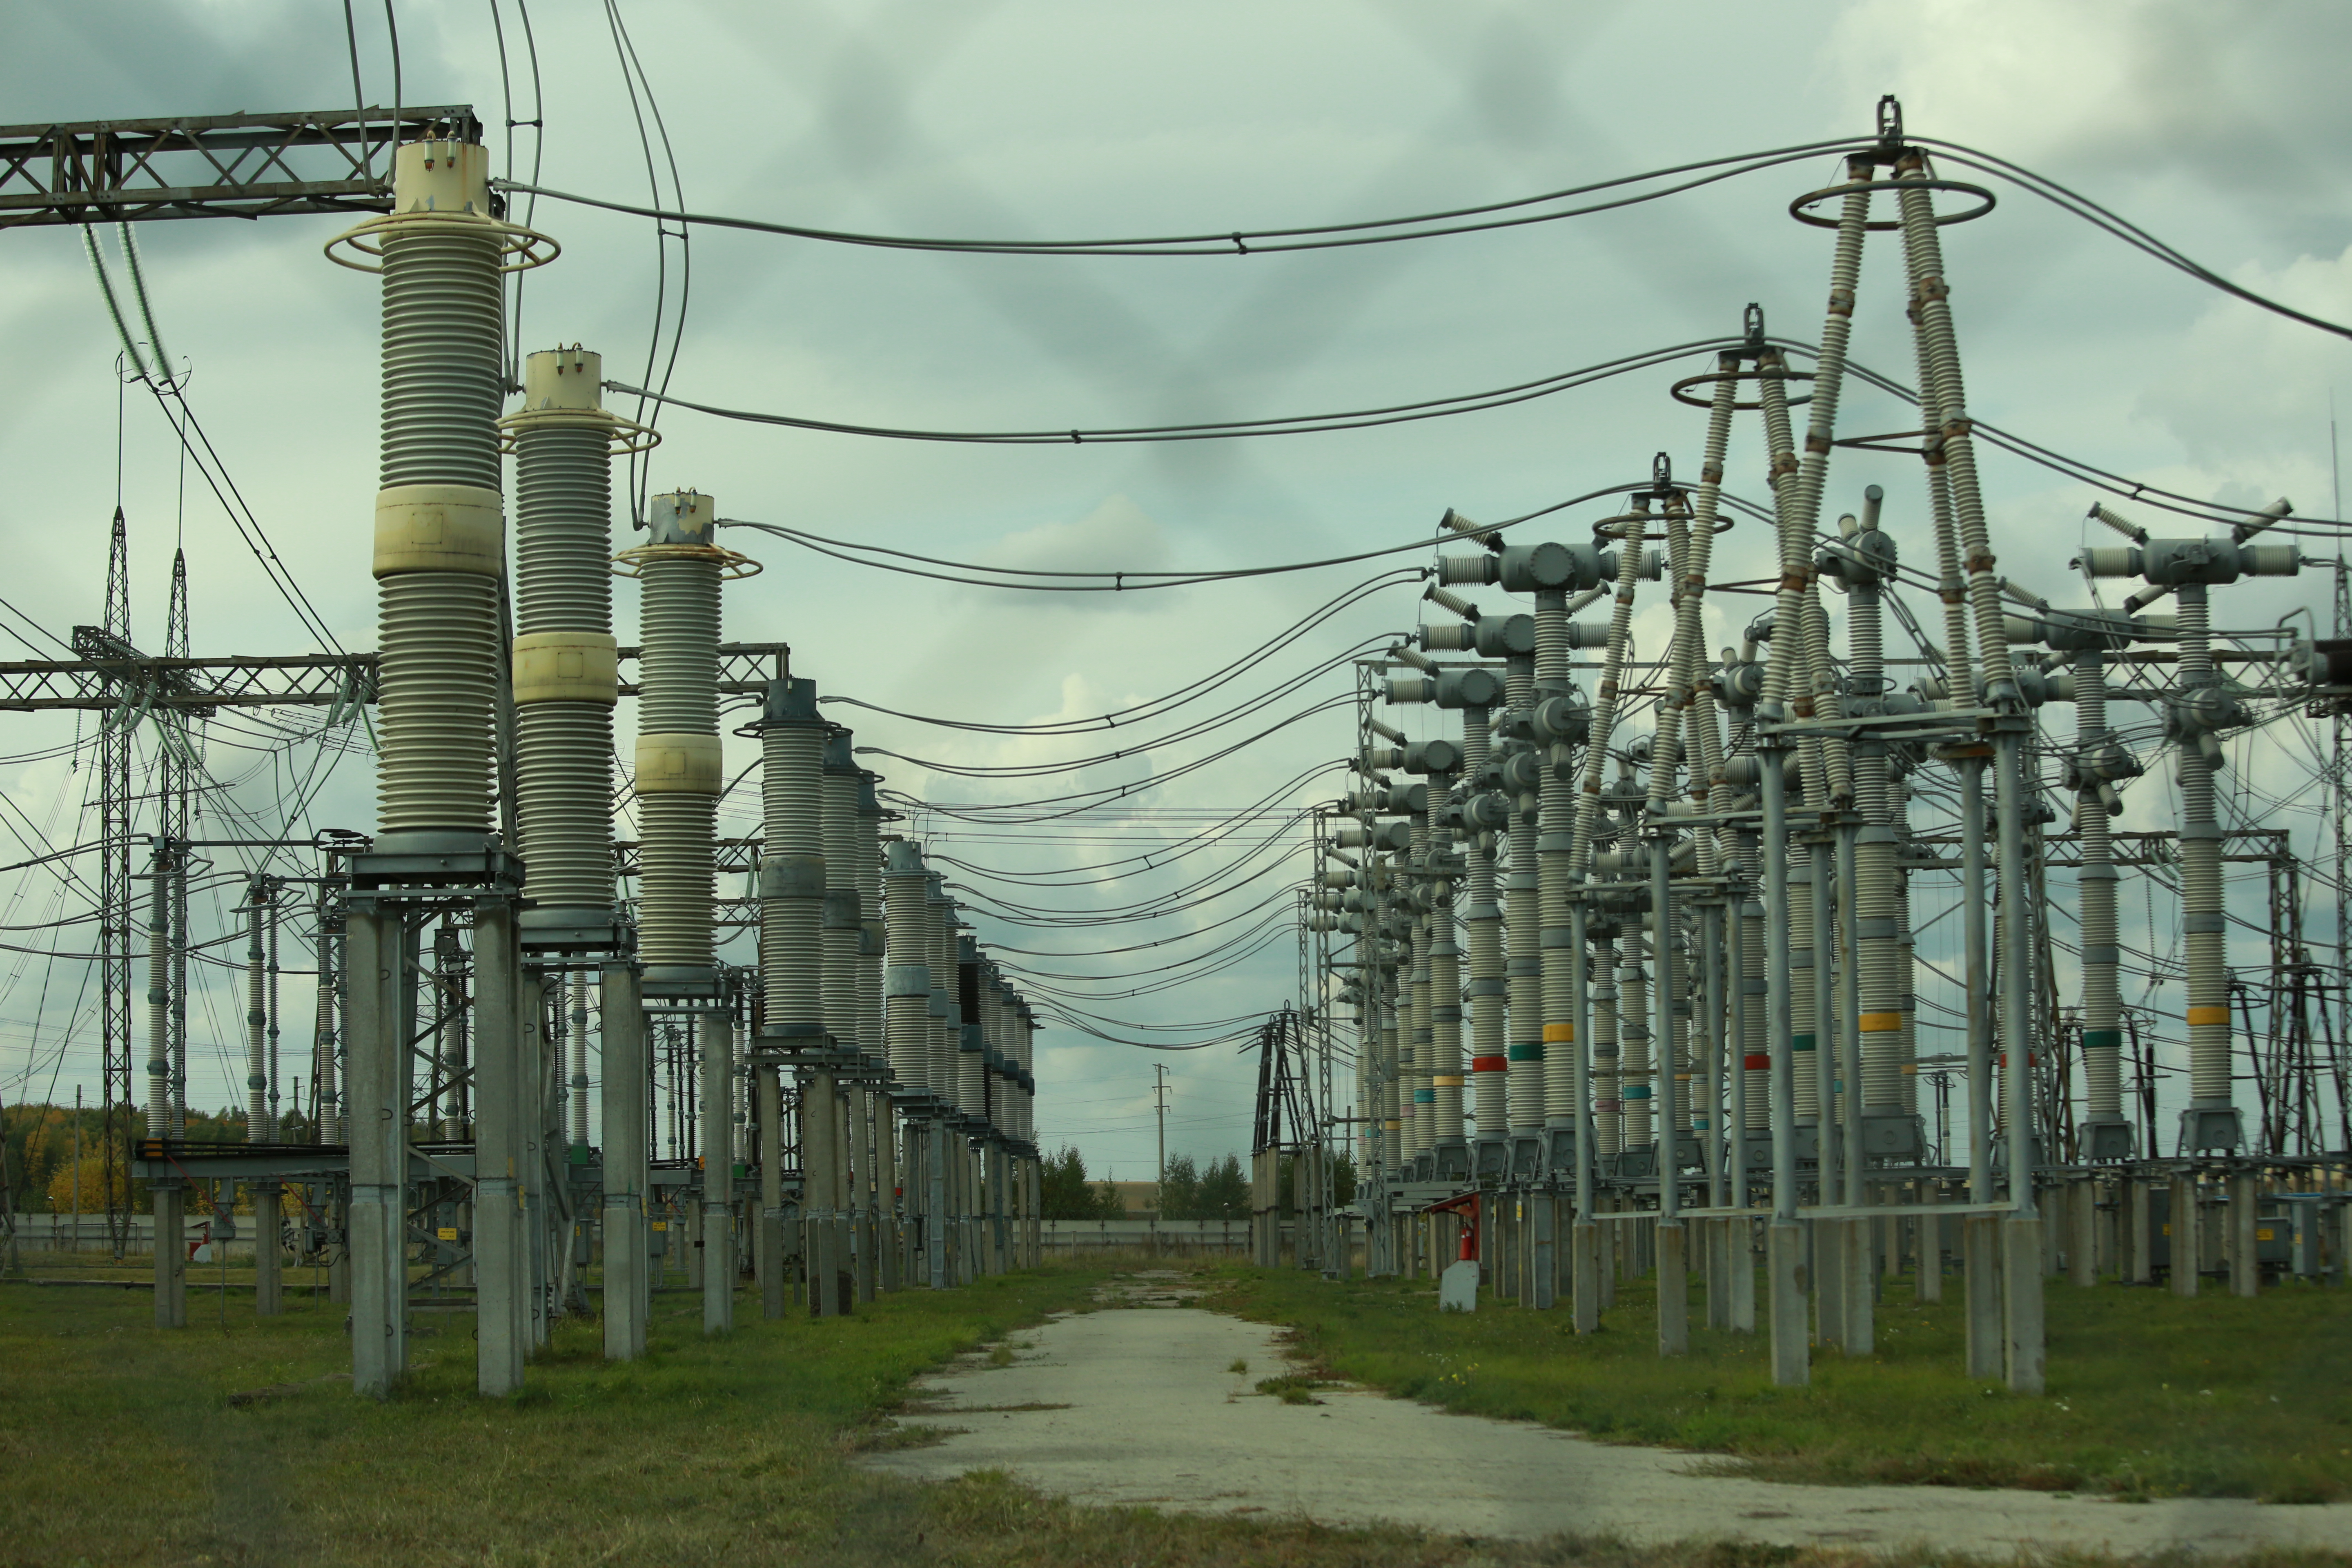 
		
		Известен график отключений электричества в Пензенской области 3-7 декабря
		
	